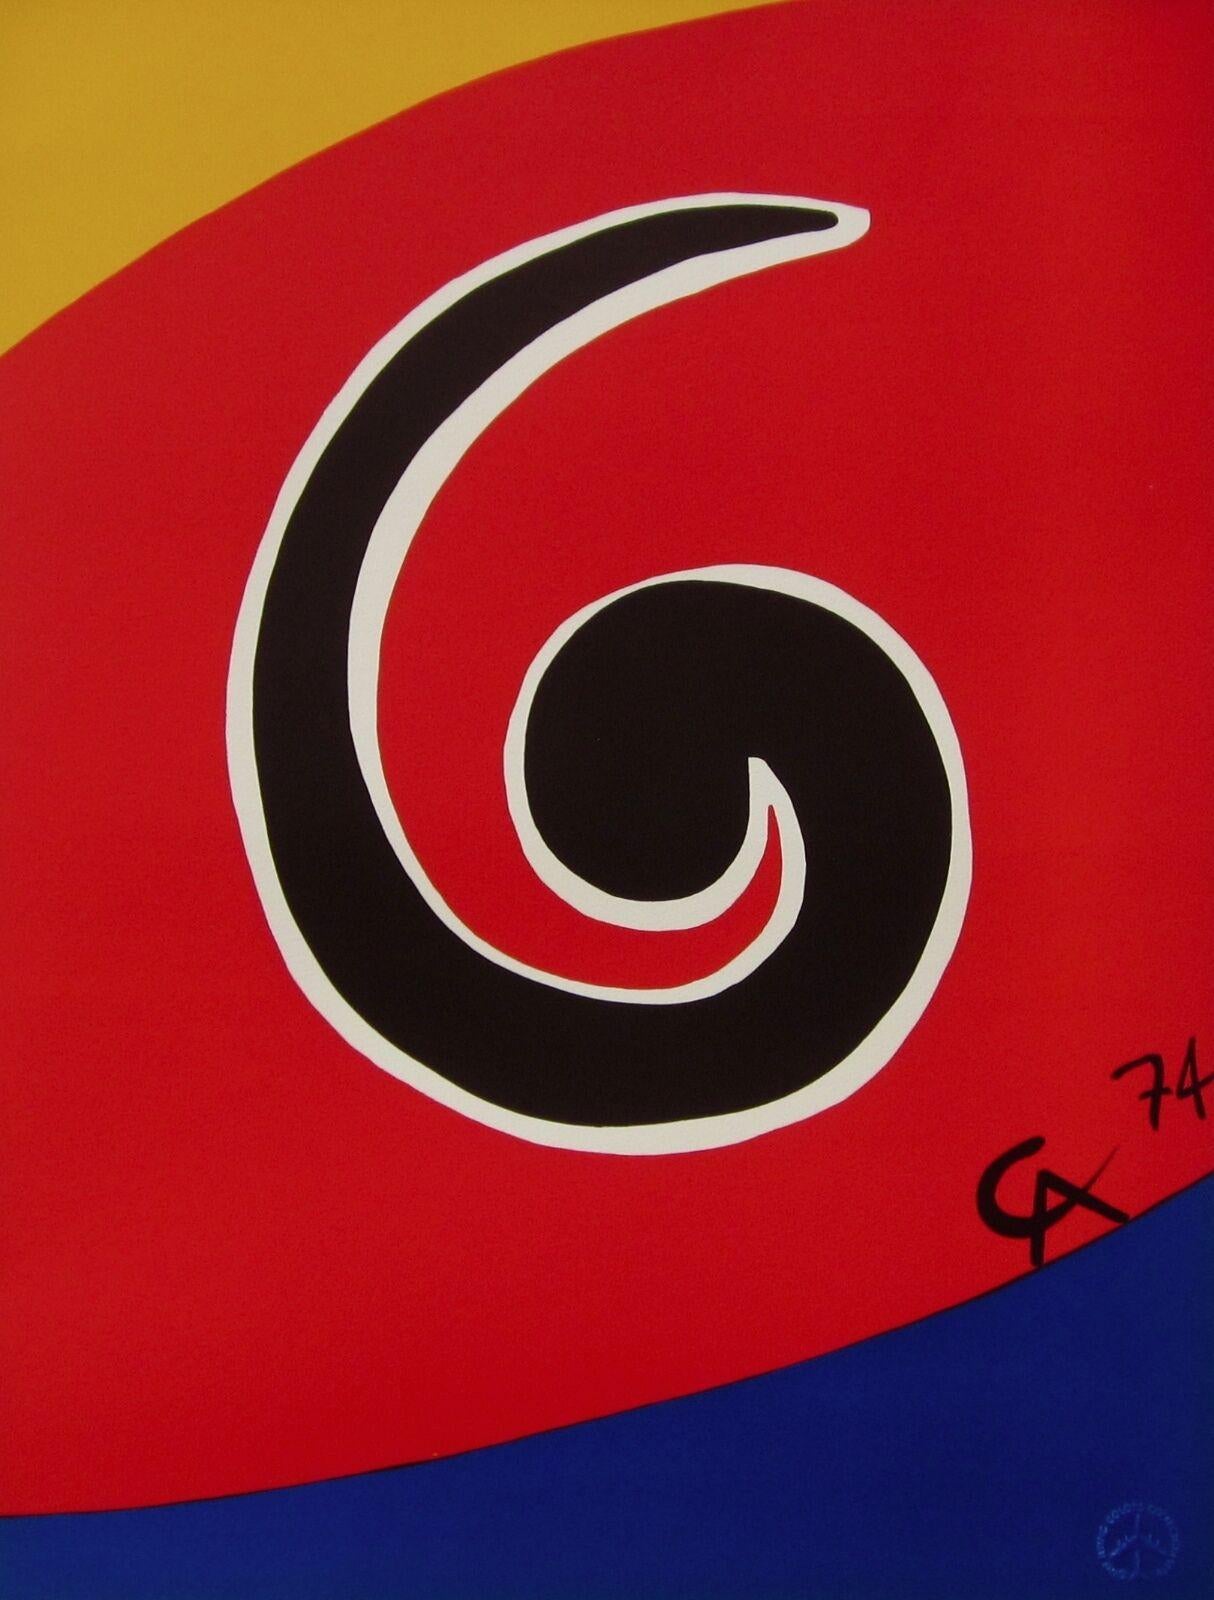 Künstler: Alexander Calder (1898-1976)
Titel: Sky Swirl (aus der Braniff International Airways Flying Colors Collection)
Jahr: 1974
Medium: Lithographie auf Arches-Papier 
Größe: 20 x 26 Zoll
Zustand: Ausgezeichnet
Auflage: 3,000, plus